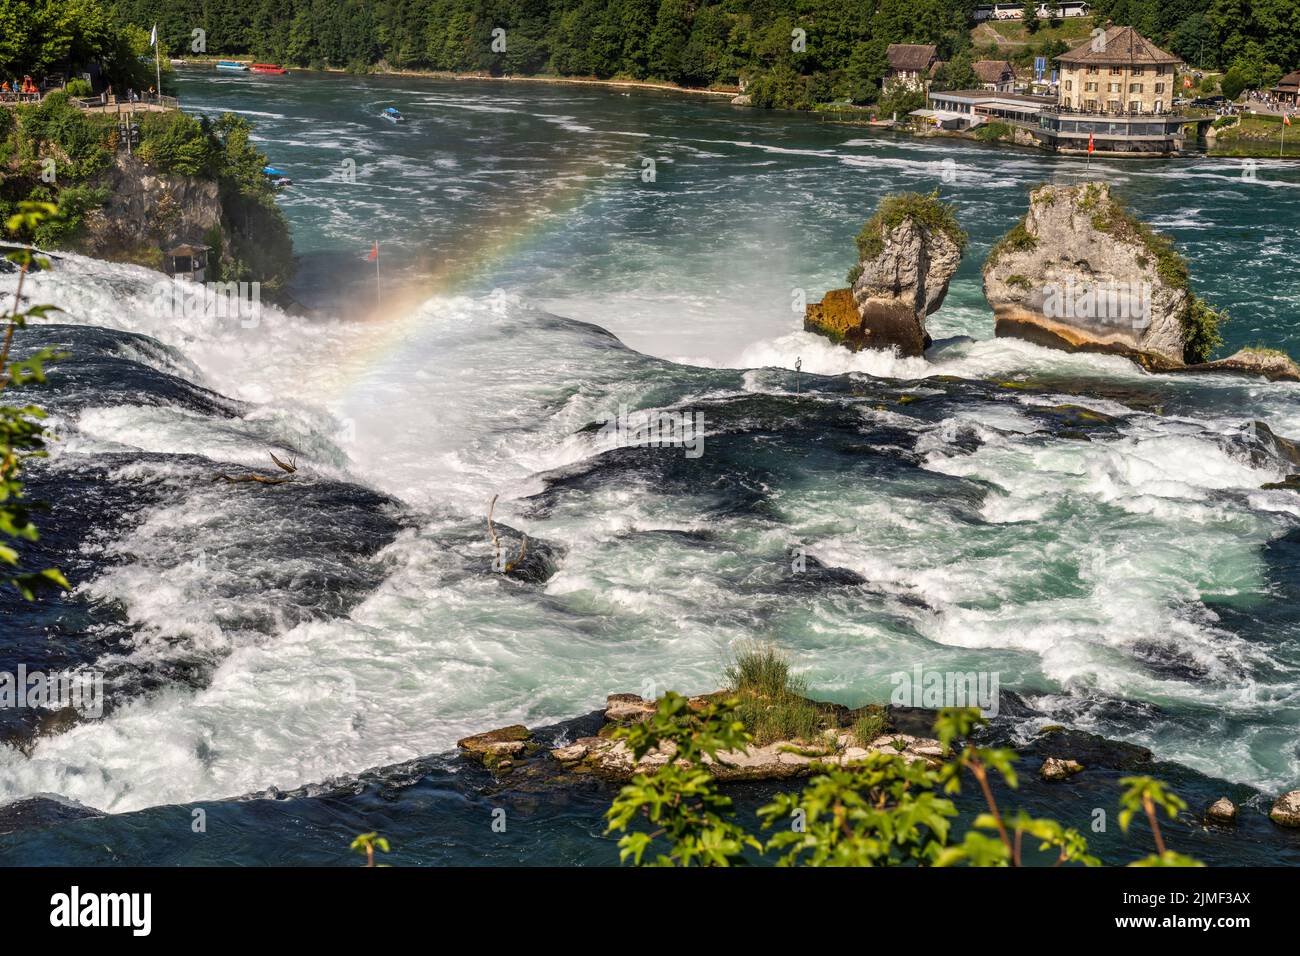 Wasserfall Rheinfall bei Neuhausen am Rheinfall, Schweiz, Europa |  Rhine Falls, Neuhausen am Rheinfall, Switzerland, Europe Stock Photo